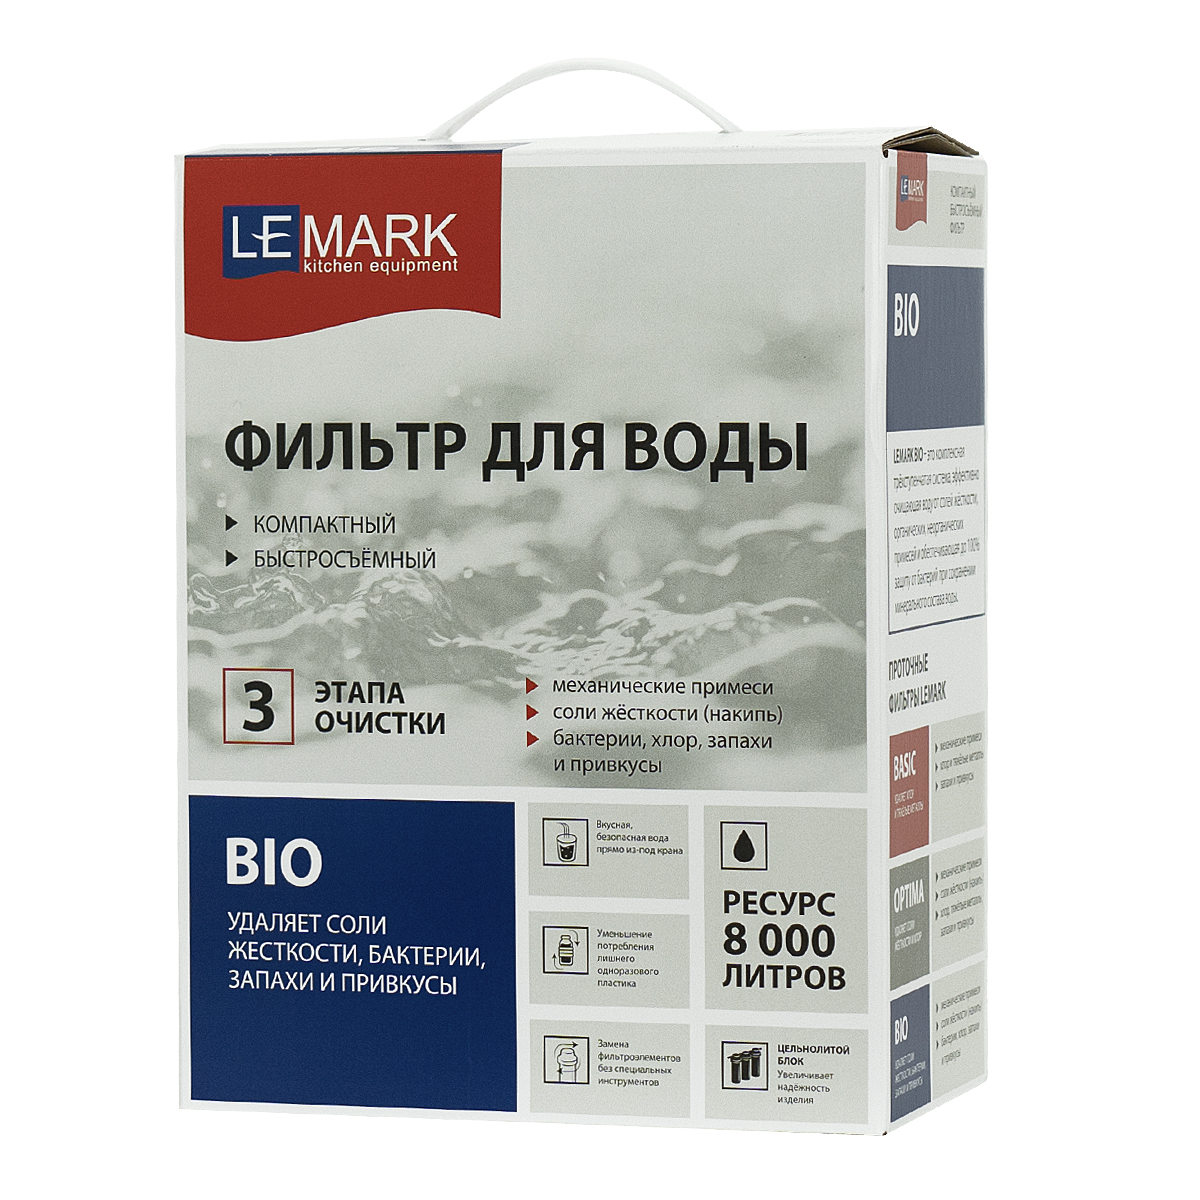 Фильтр Lemark BIO для очистки воды от соли жесткости (накипь), бактерий, хлора и привкусов